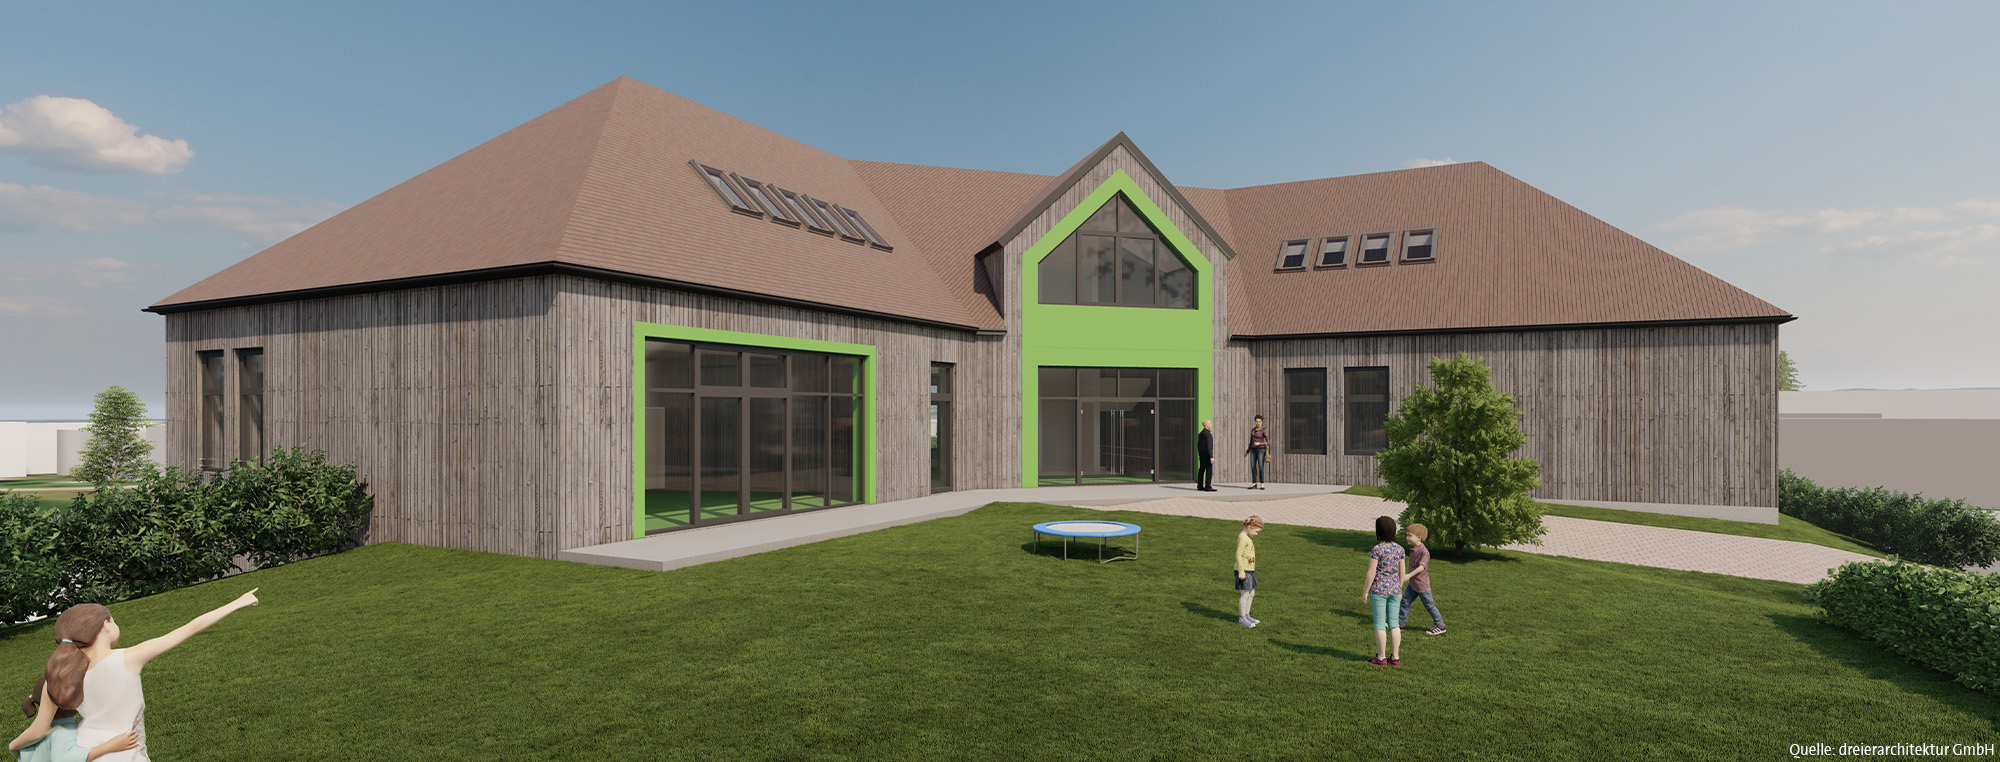 Neubau einer Kindertagestätte für die Gemeinde Ursberg - Visualisierung von dreierarchitektur GmbH